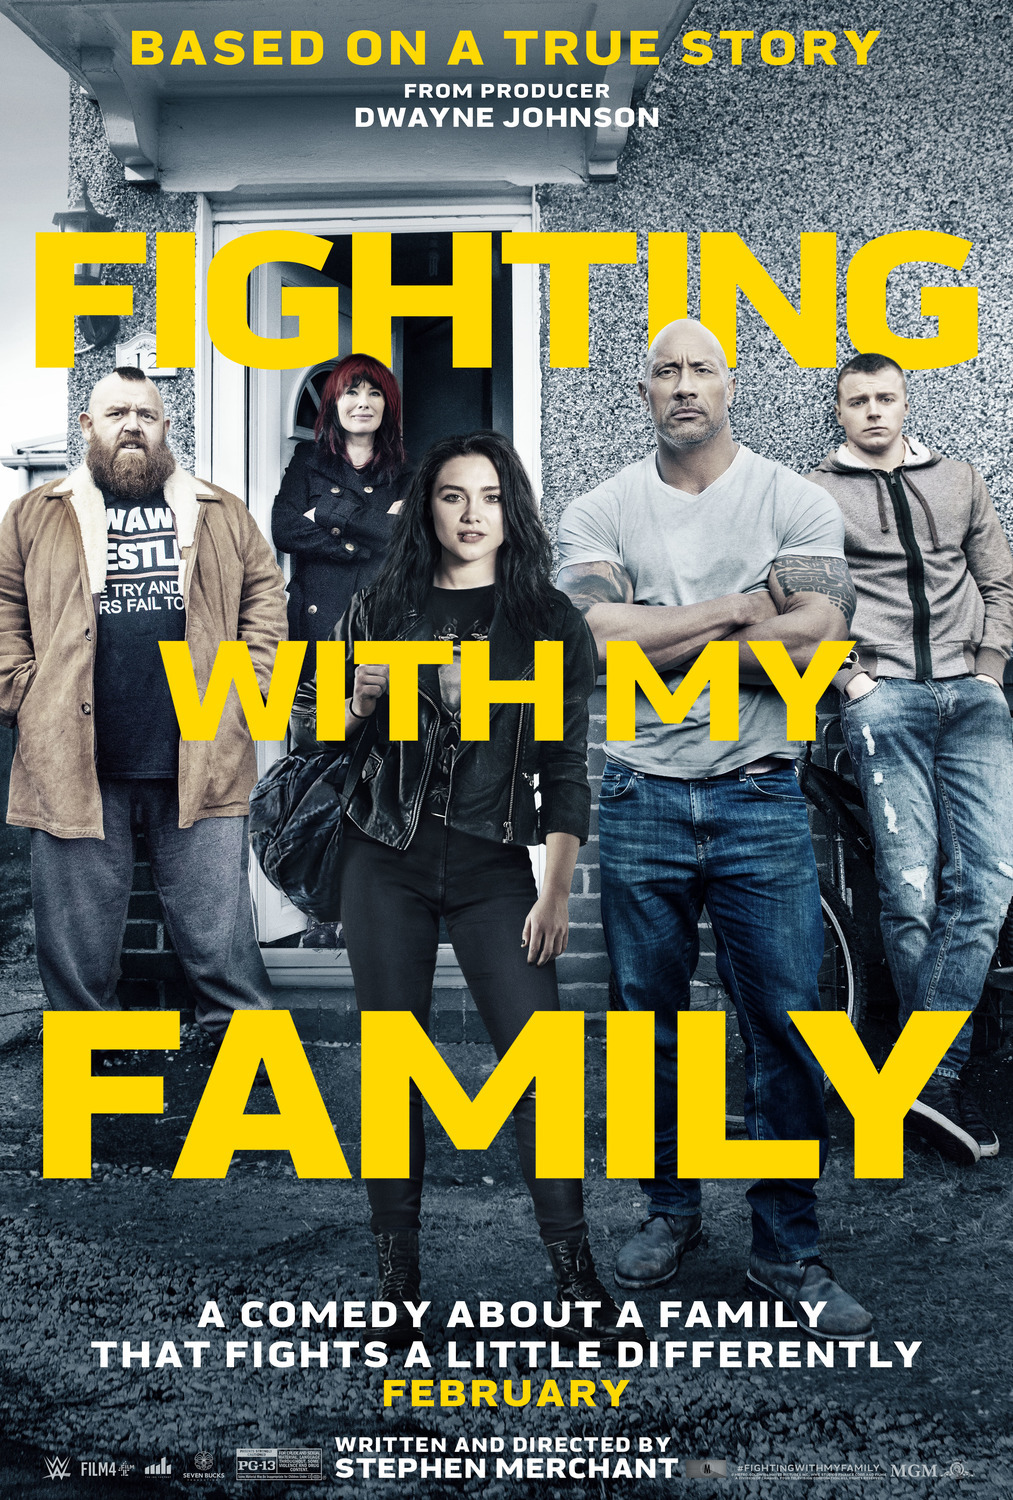 حقق فيلم Fighting with My Family إيرادات وصلت إلى 21 مليون دولار أمريكى منذ طرحه يوم 14 فبراير الماضى فى الولايات المتحدة الأمريكية حتى الآن، ومن المقرر أن يطرح في باقى الدول حول العالم خلال الشهر الجارى.